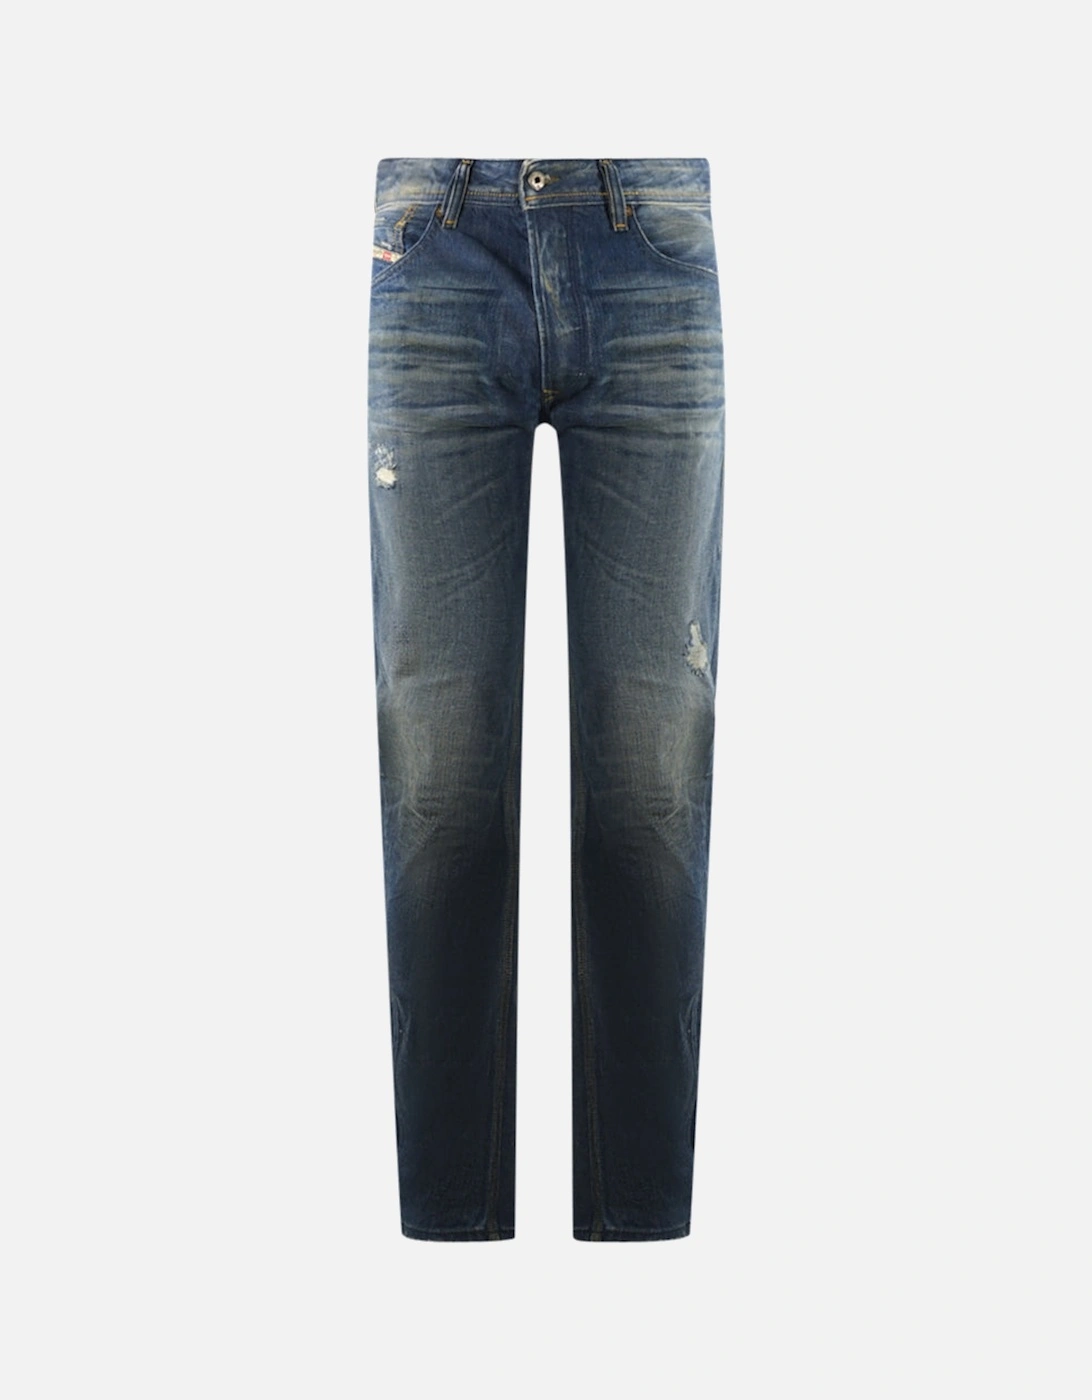 Bravefort 801M Jeans, 3 of 2